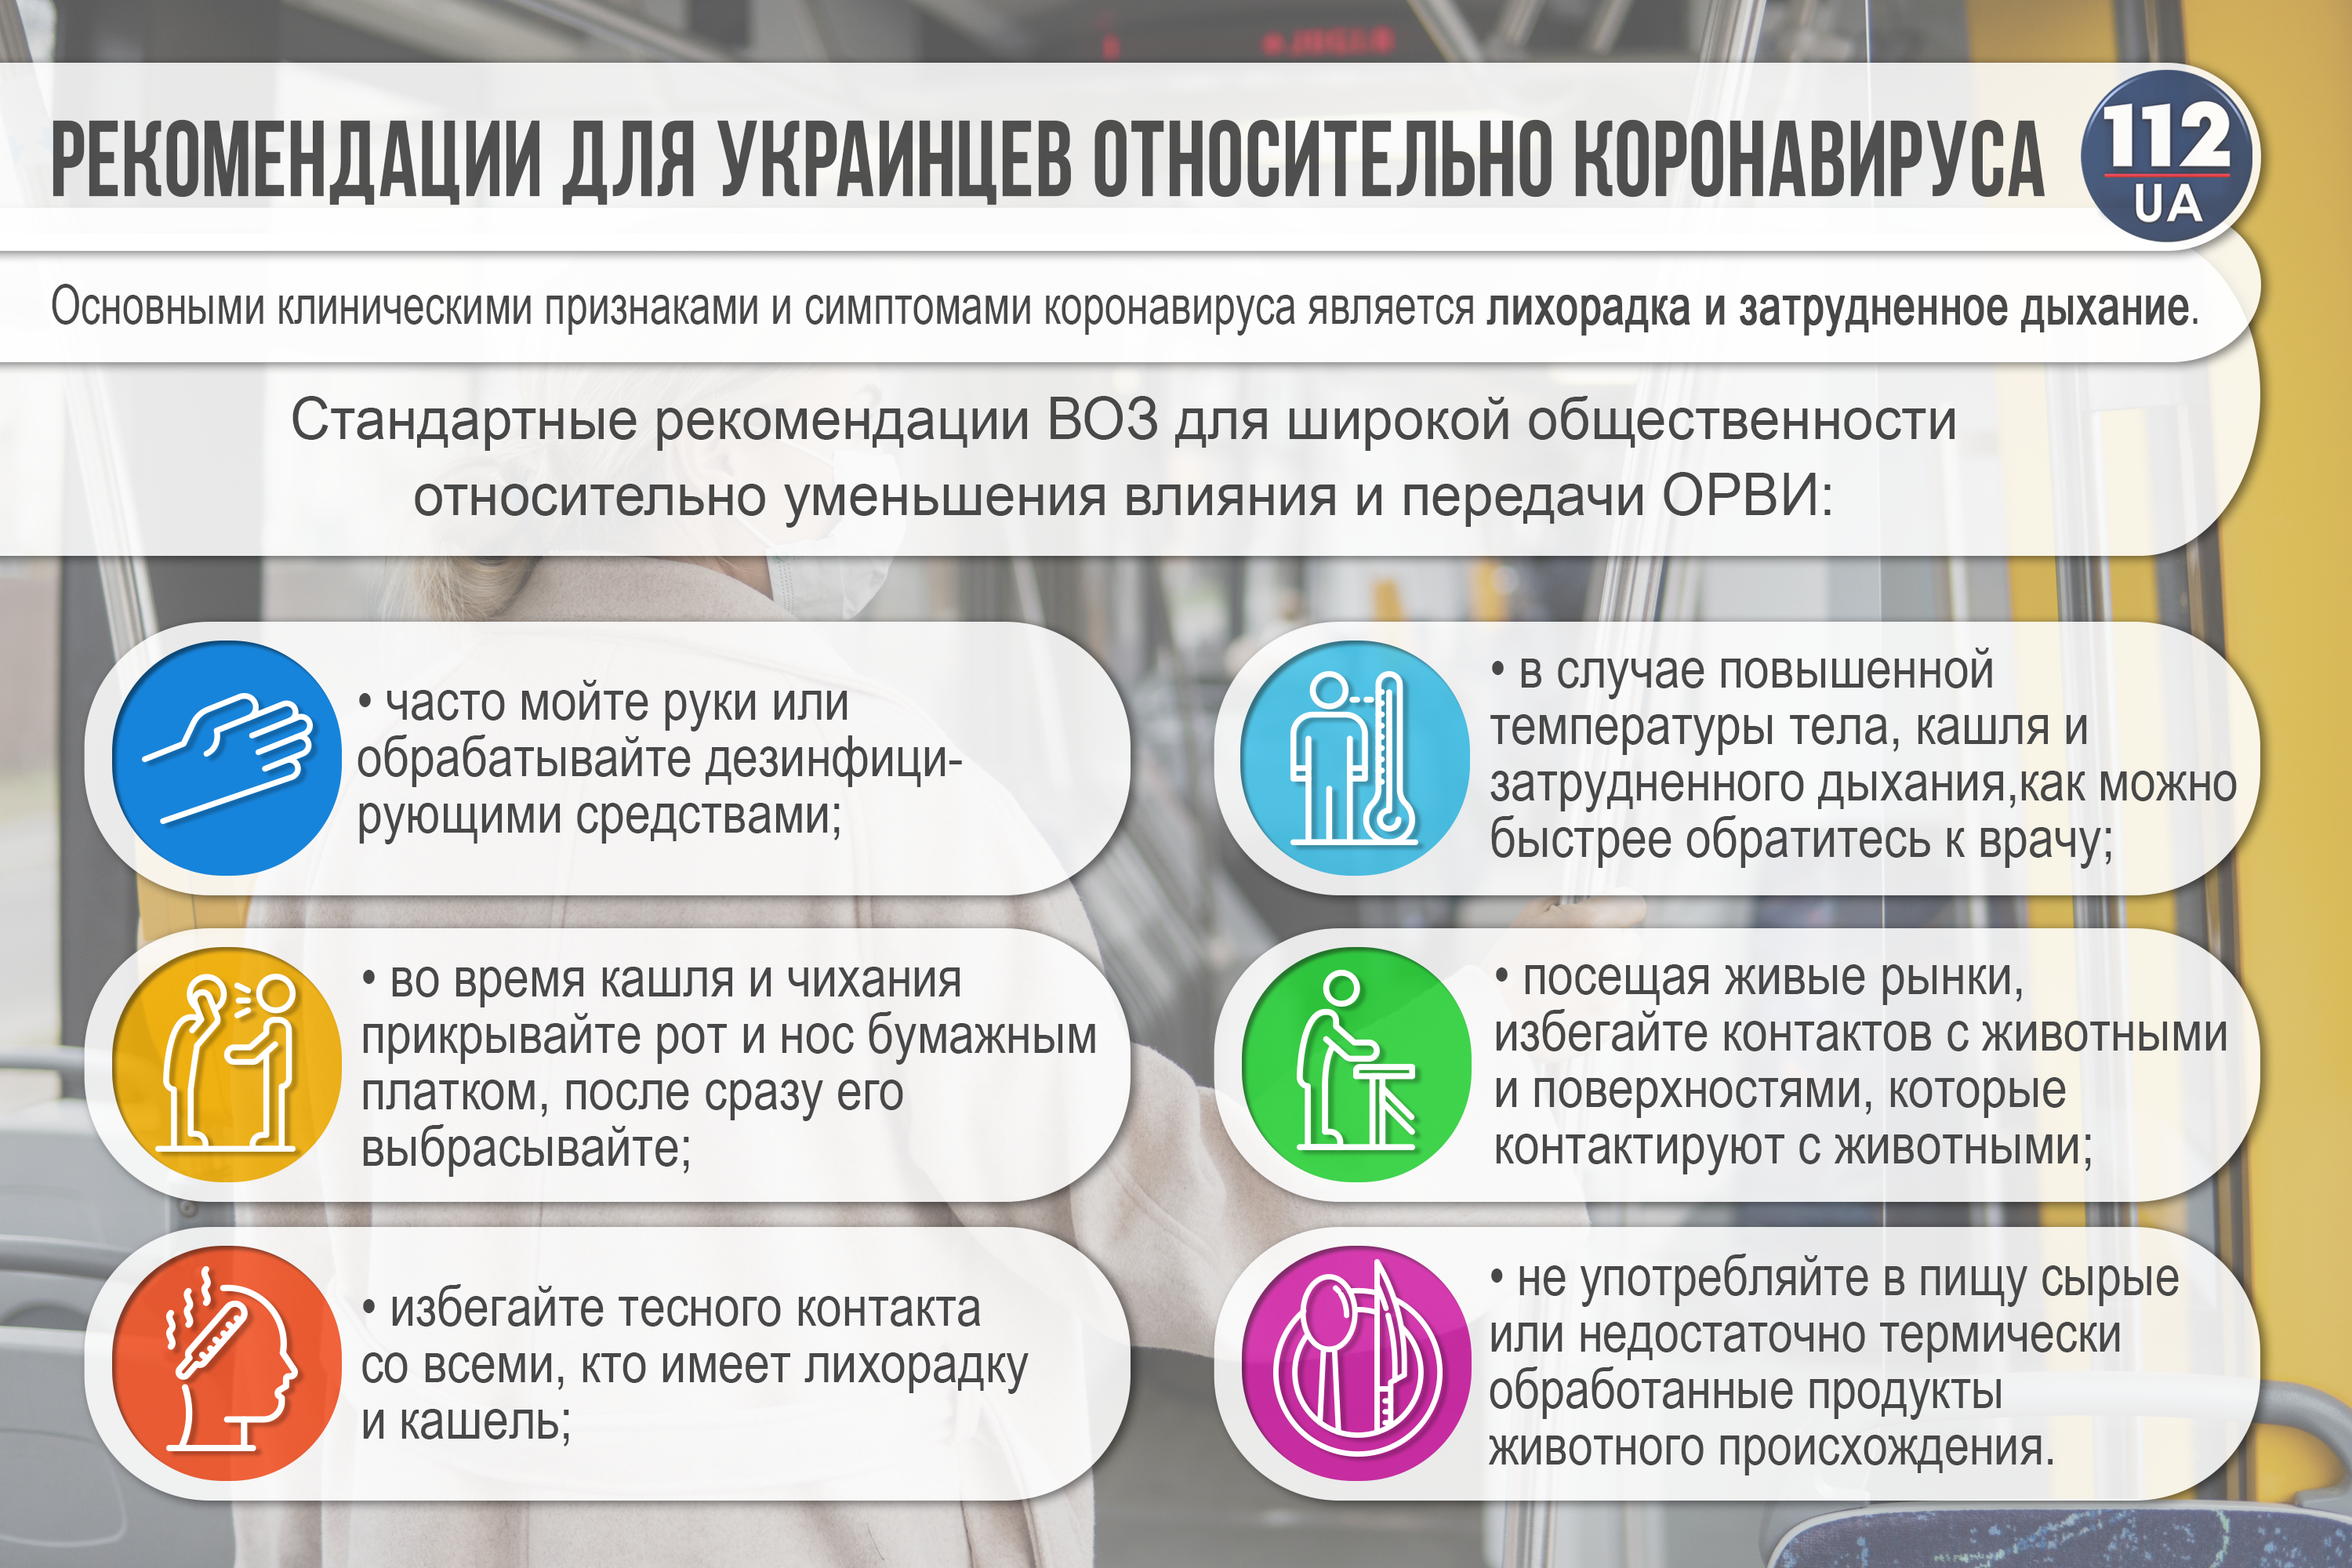 На Западной Украине началось развертывание больниц для приема больных коронавирусом